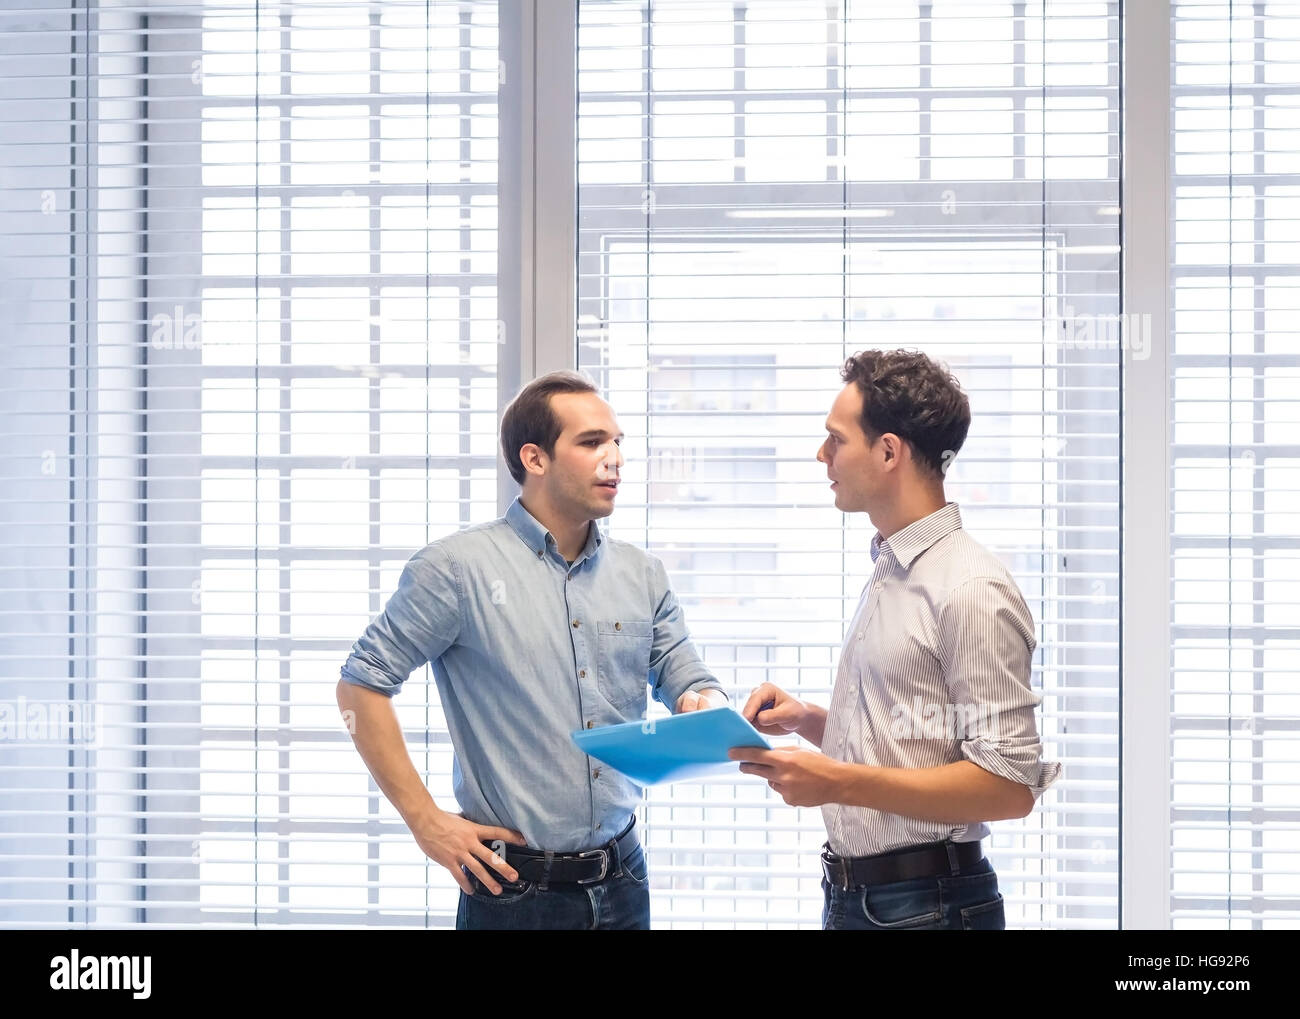 Zwei Kollegen sprechen gemeinsam über Projekt-Dokumente stehen in hellen modernen Büroeinrichtung Stockfoto